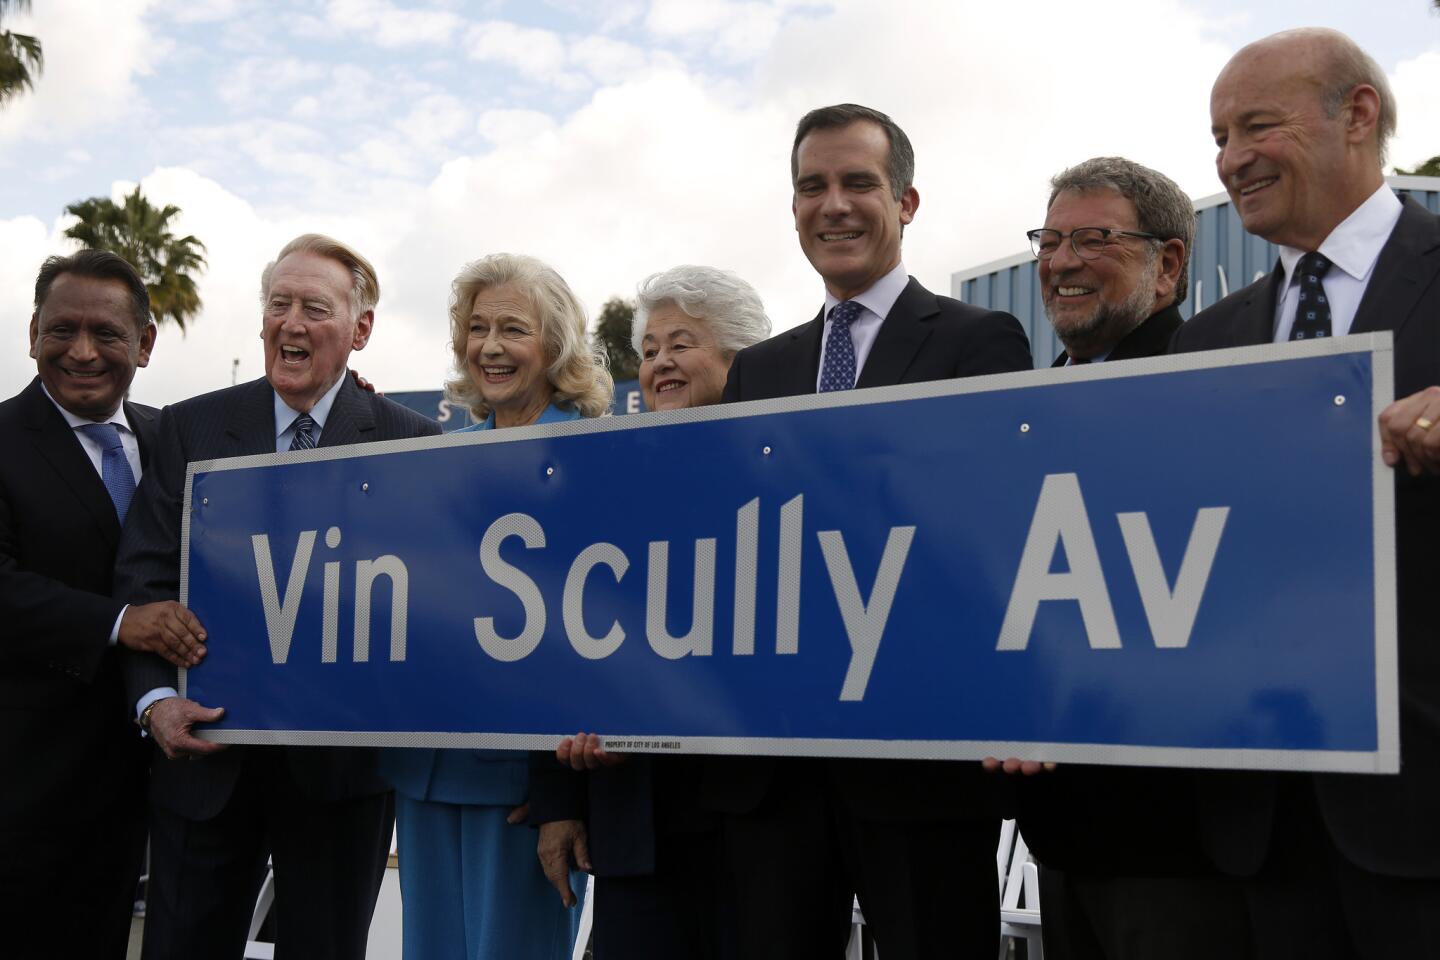 Vin Scully Avenue